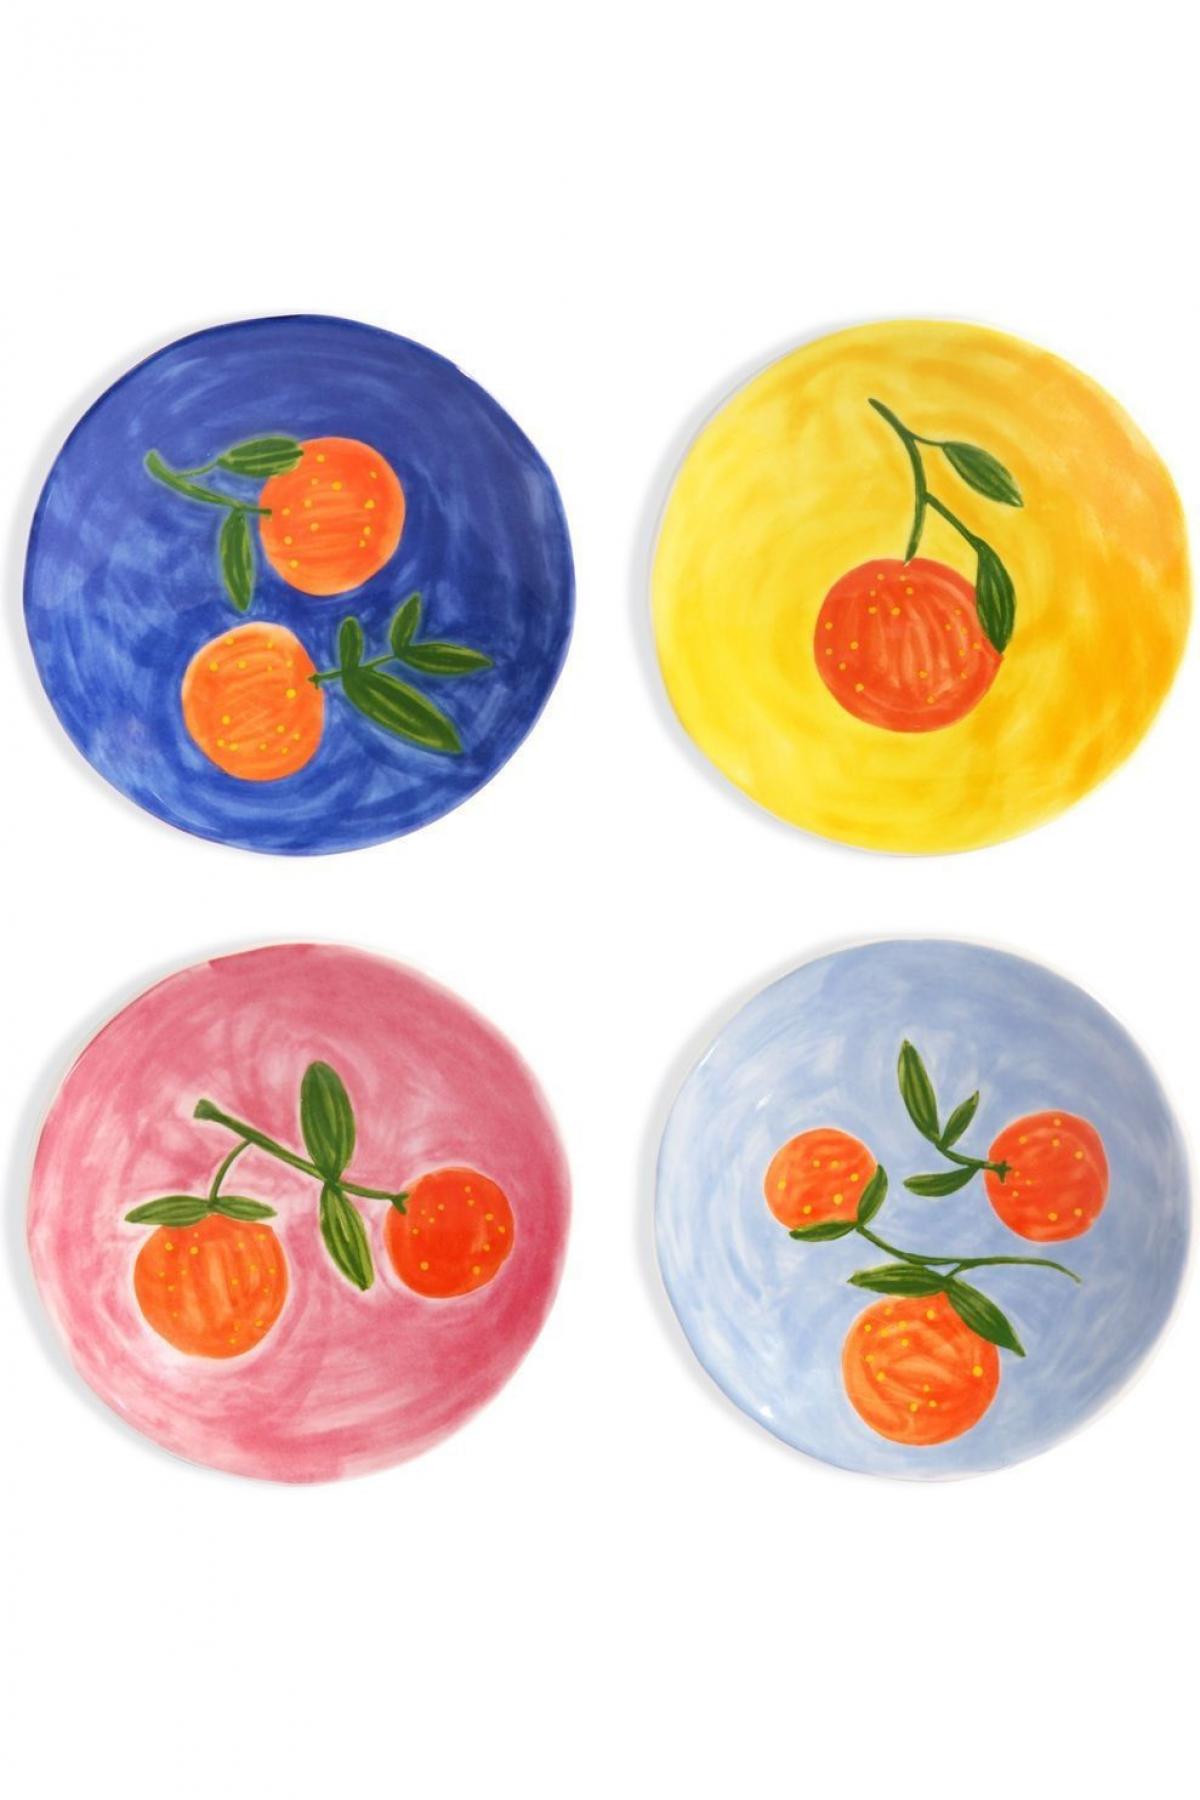 Geschilderde bordenset in primaire kleuren met fruit